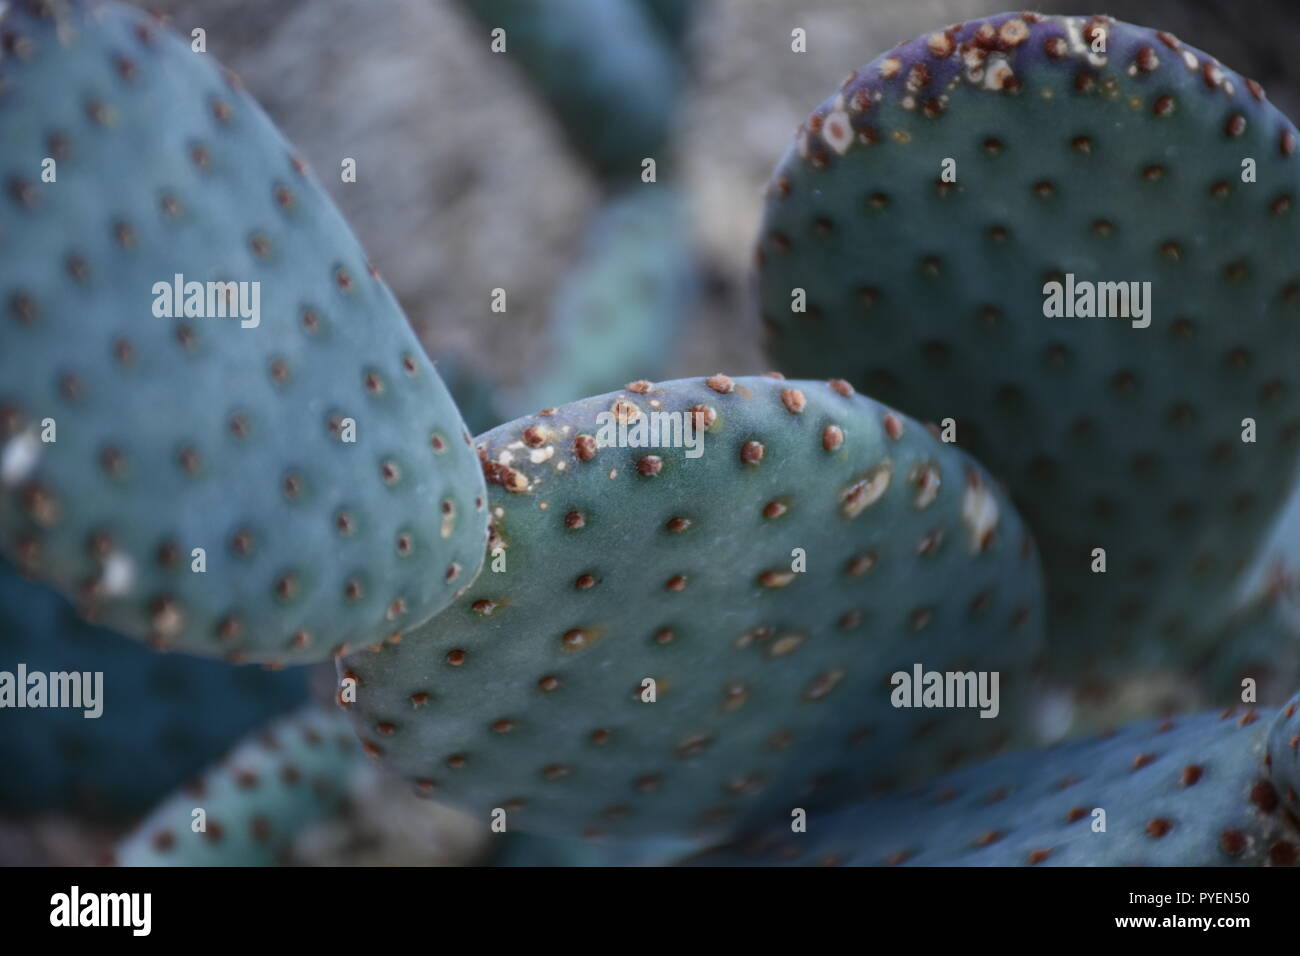 Cactus closeup Stock Photo